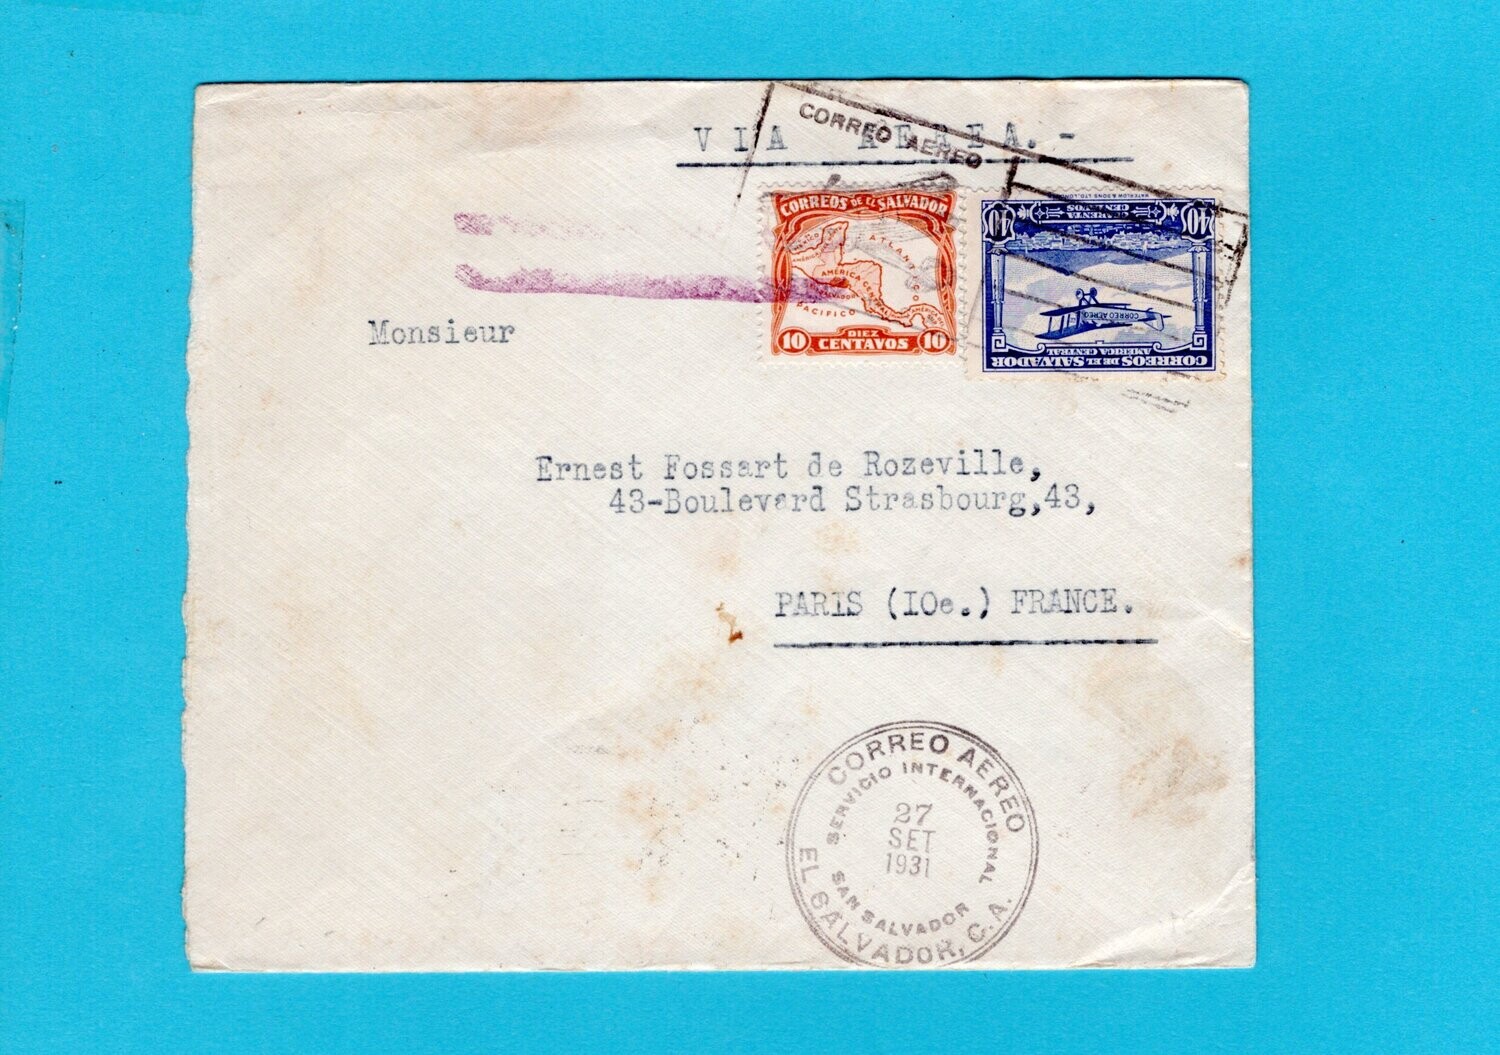 El Salvador Air mail